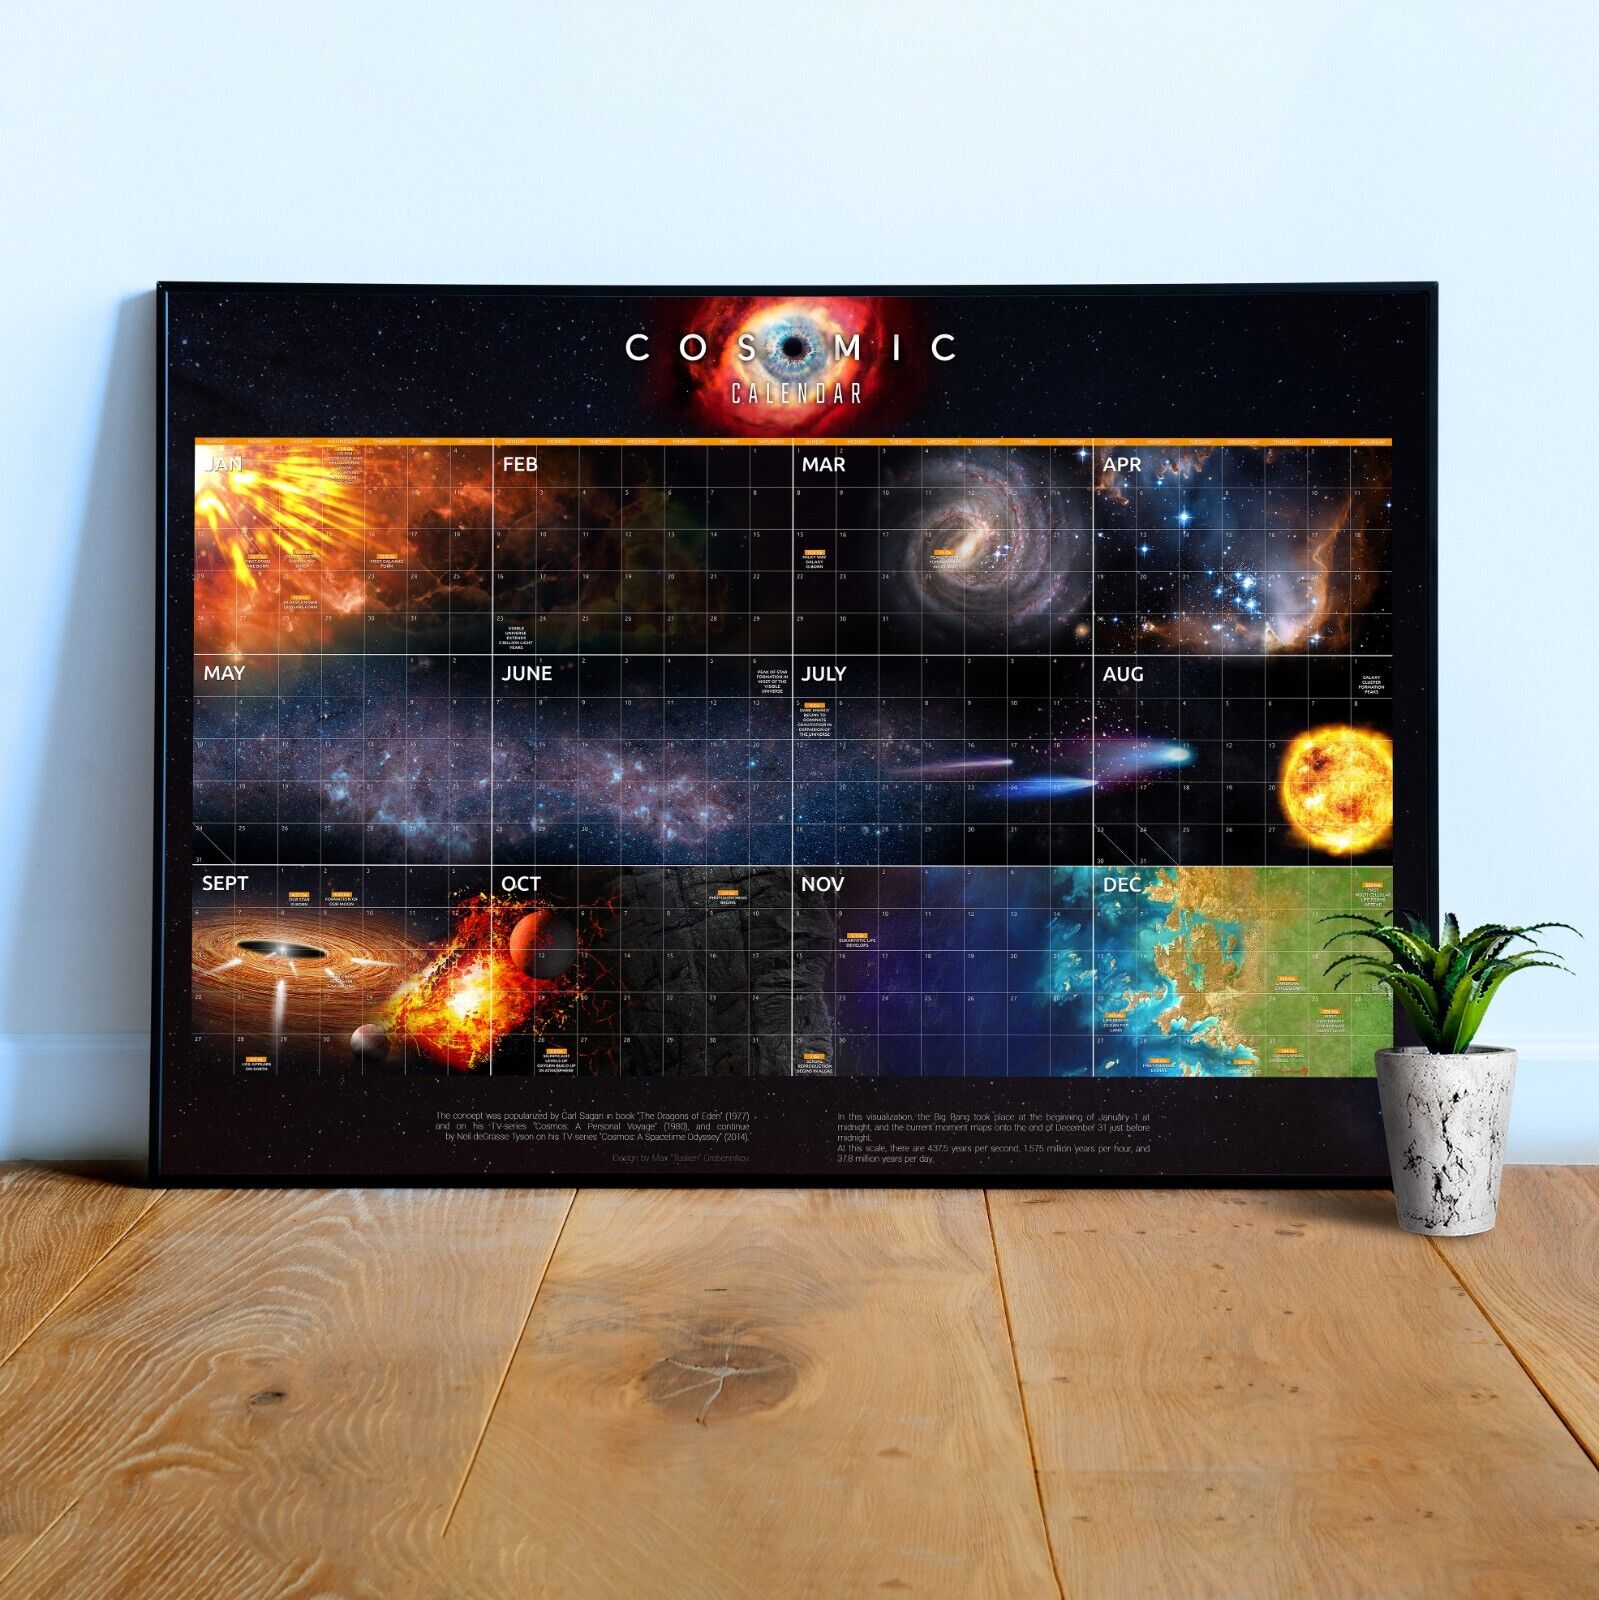 Cosmic Calendar - Carl Sagan style @eBay